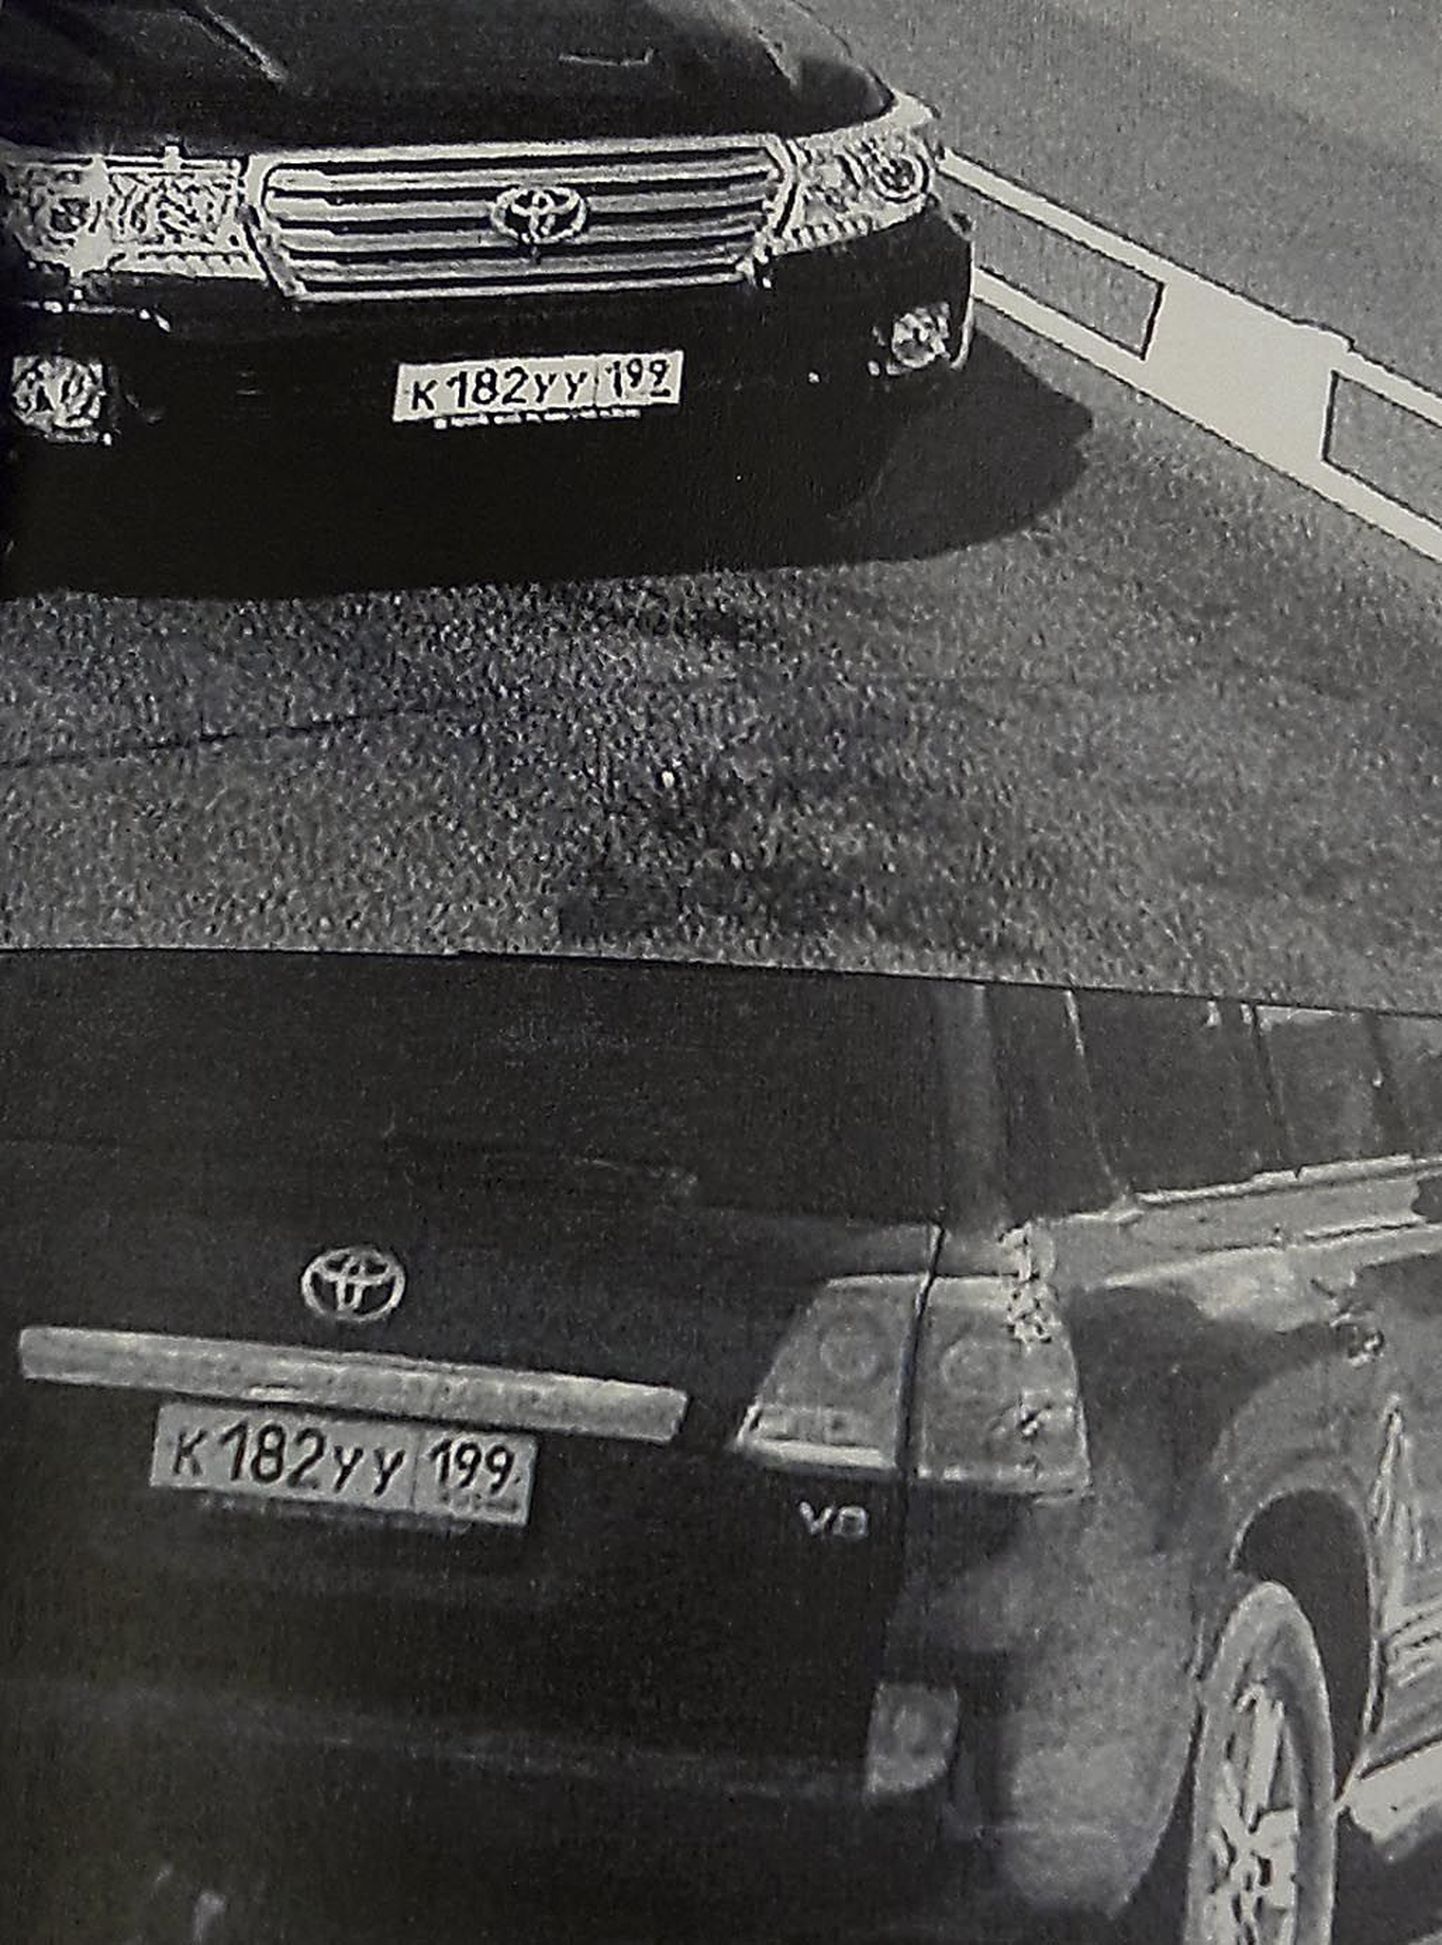 Varastatud Toyota Land Cruiser jäi pärast kadumist Ikla piiripunkti kaamera ette vahetatud numbrimärkidega.